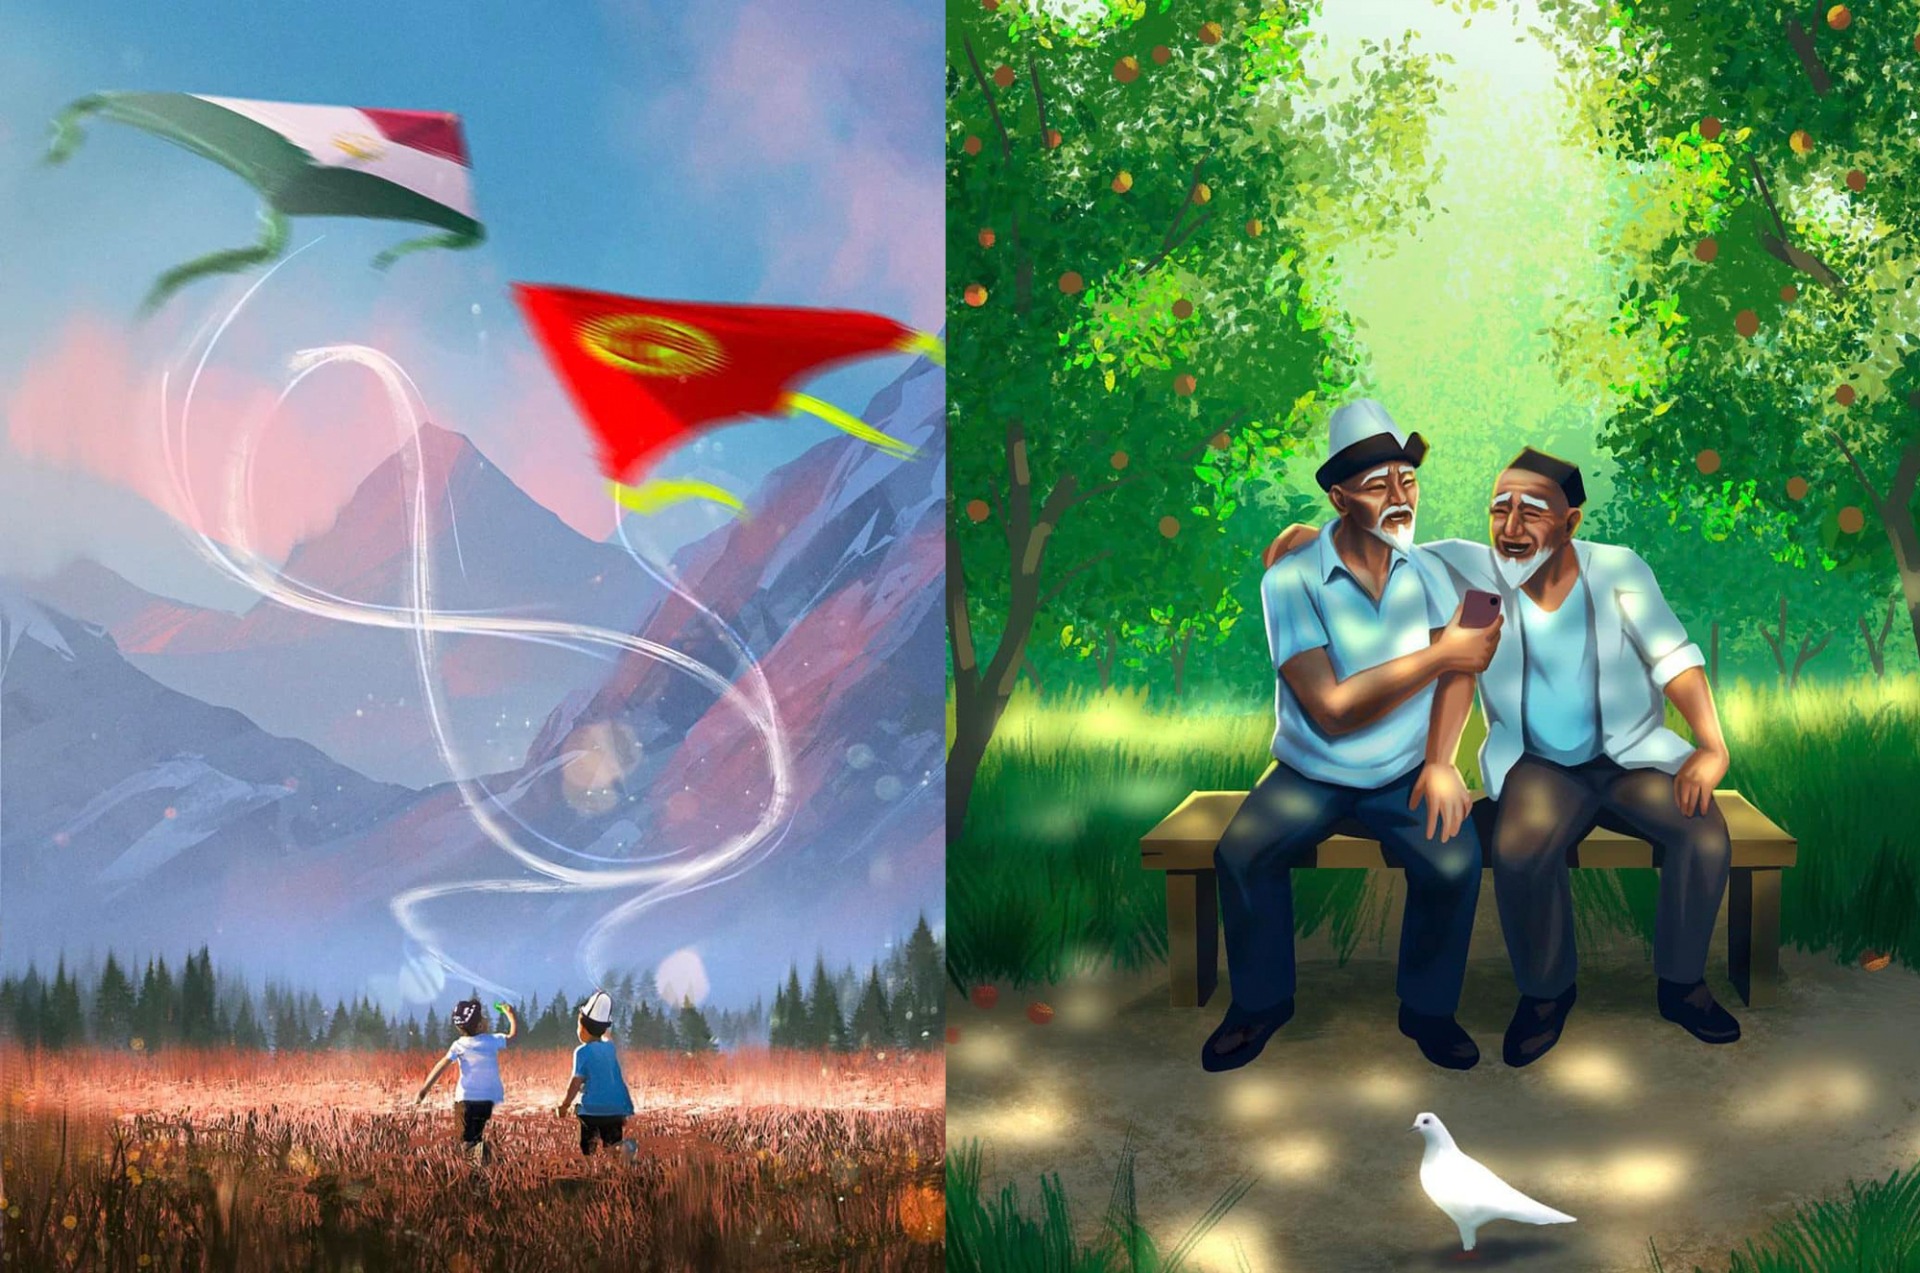 Художники Кыргызстана и Таджикистана создали арт о дружбе народов